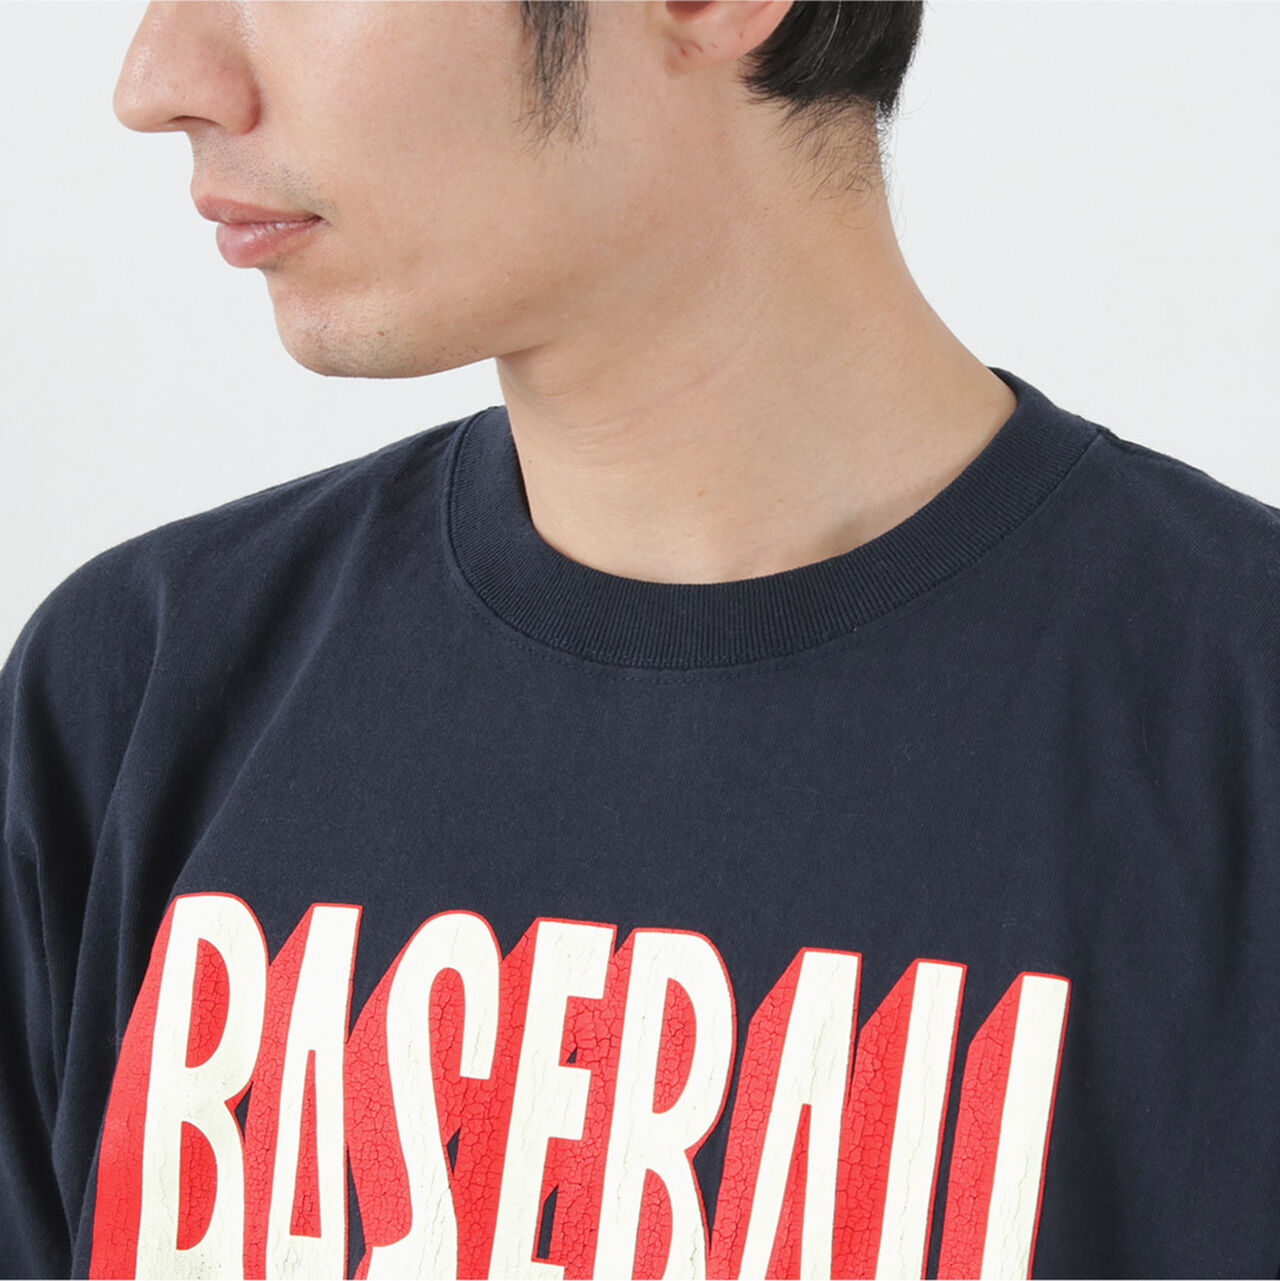 BASE BALL short sleeve T-shirt,, large image number 11